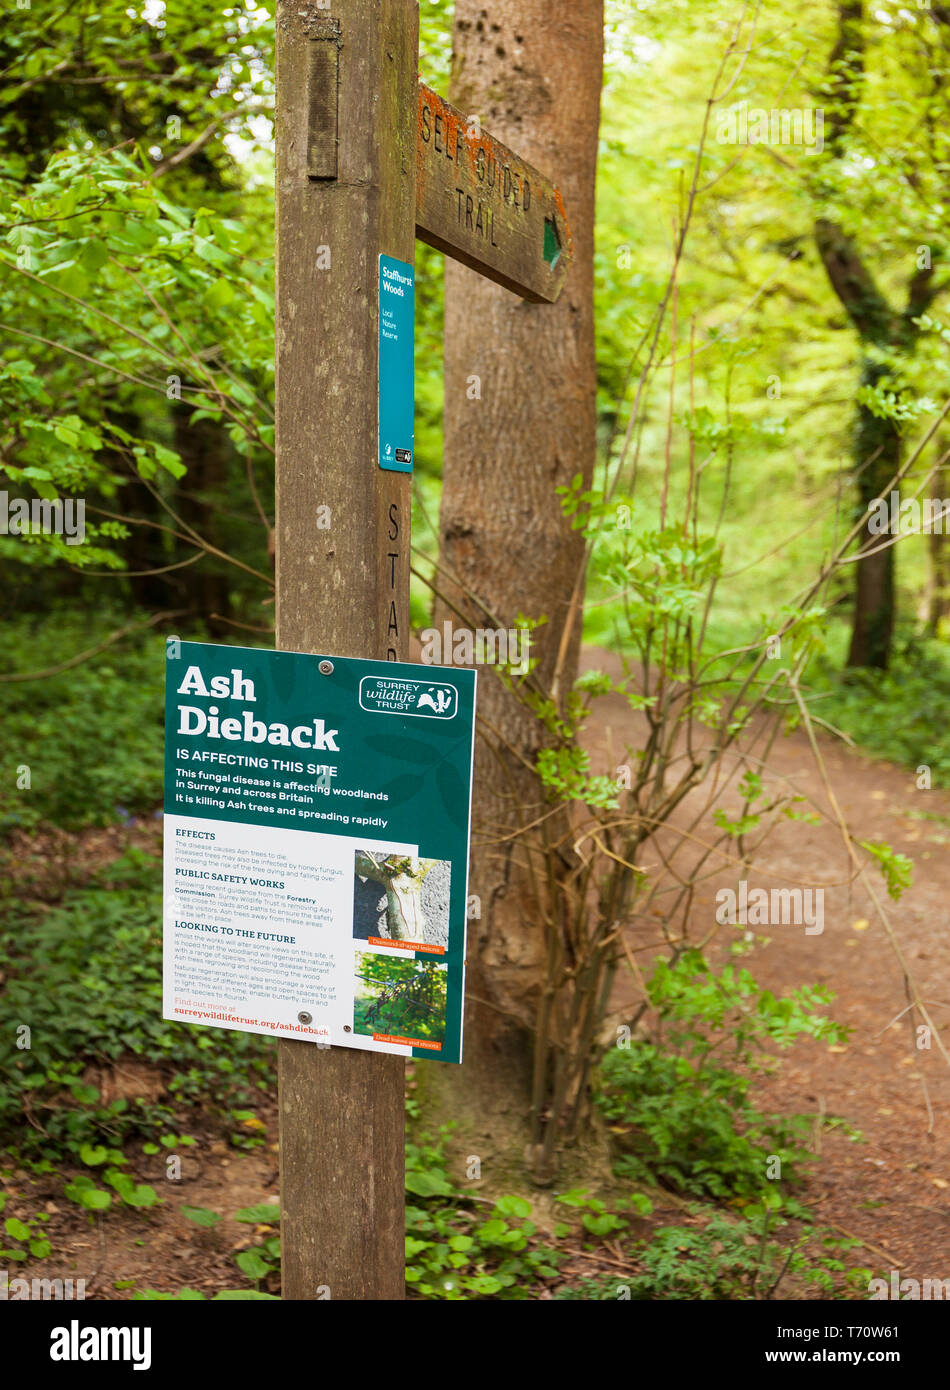 Chalarose du frêne avis d'information, Staffhurst Woods, Surrey, UK. Banque D'Images